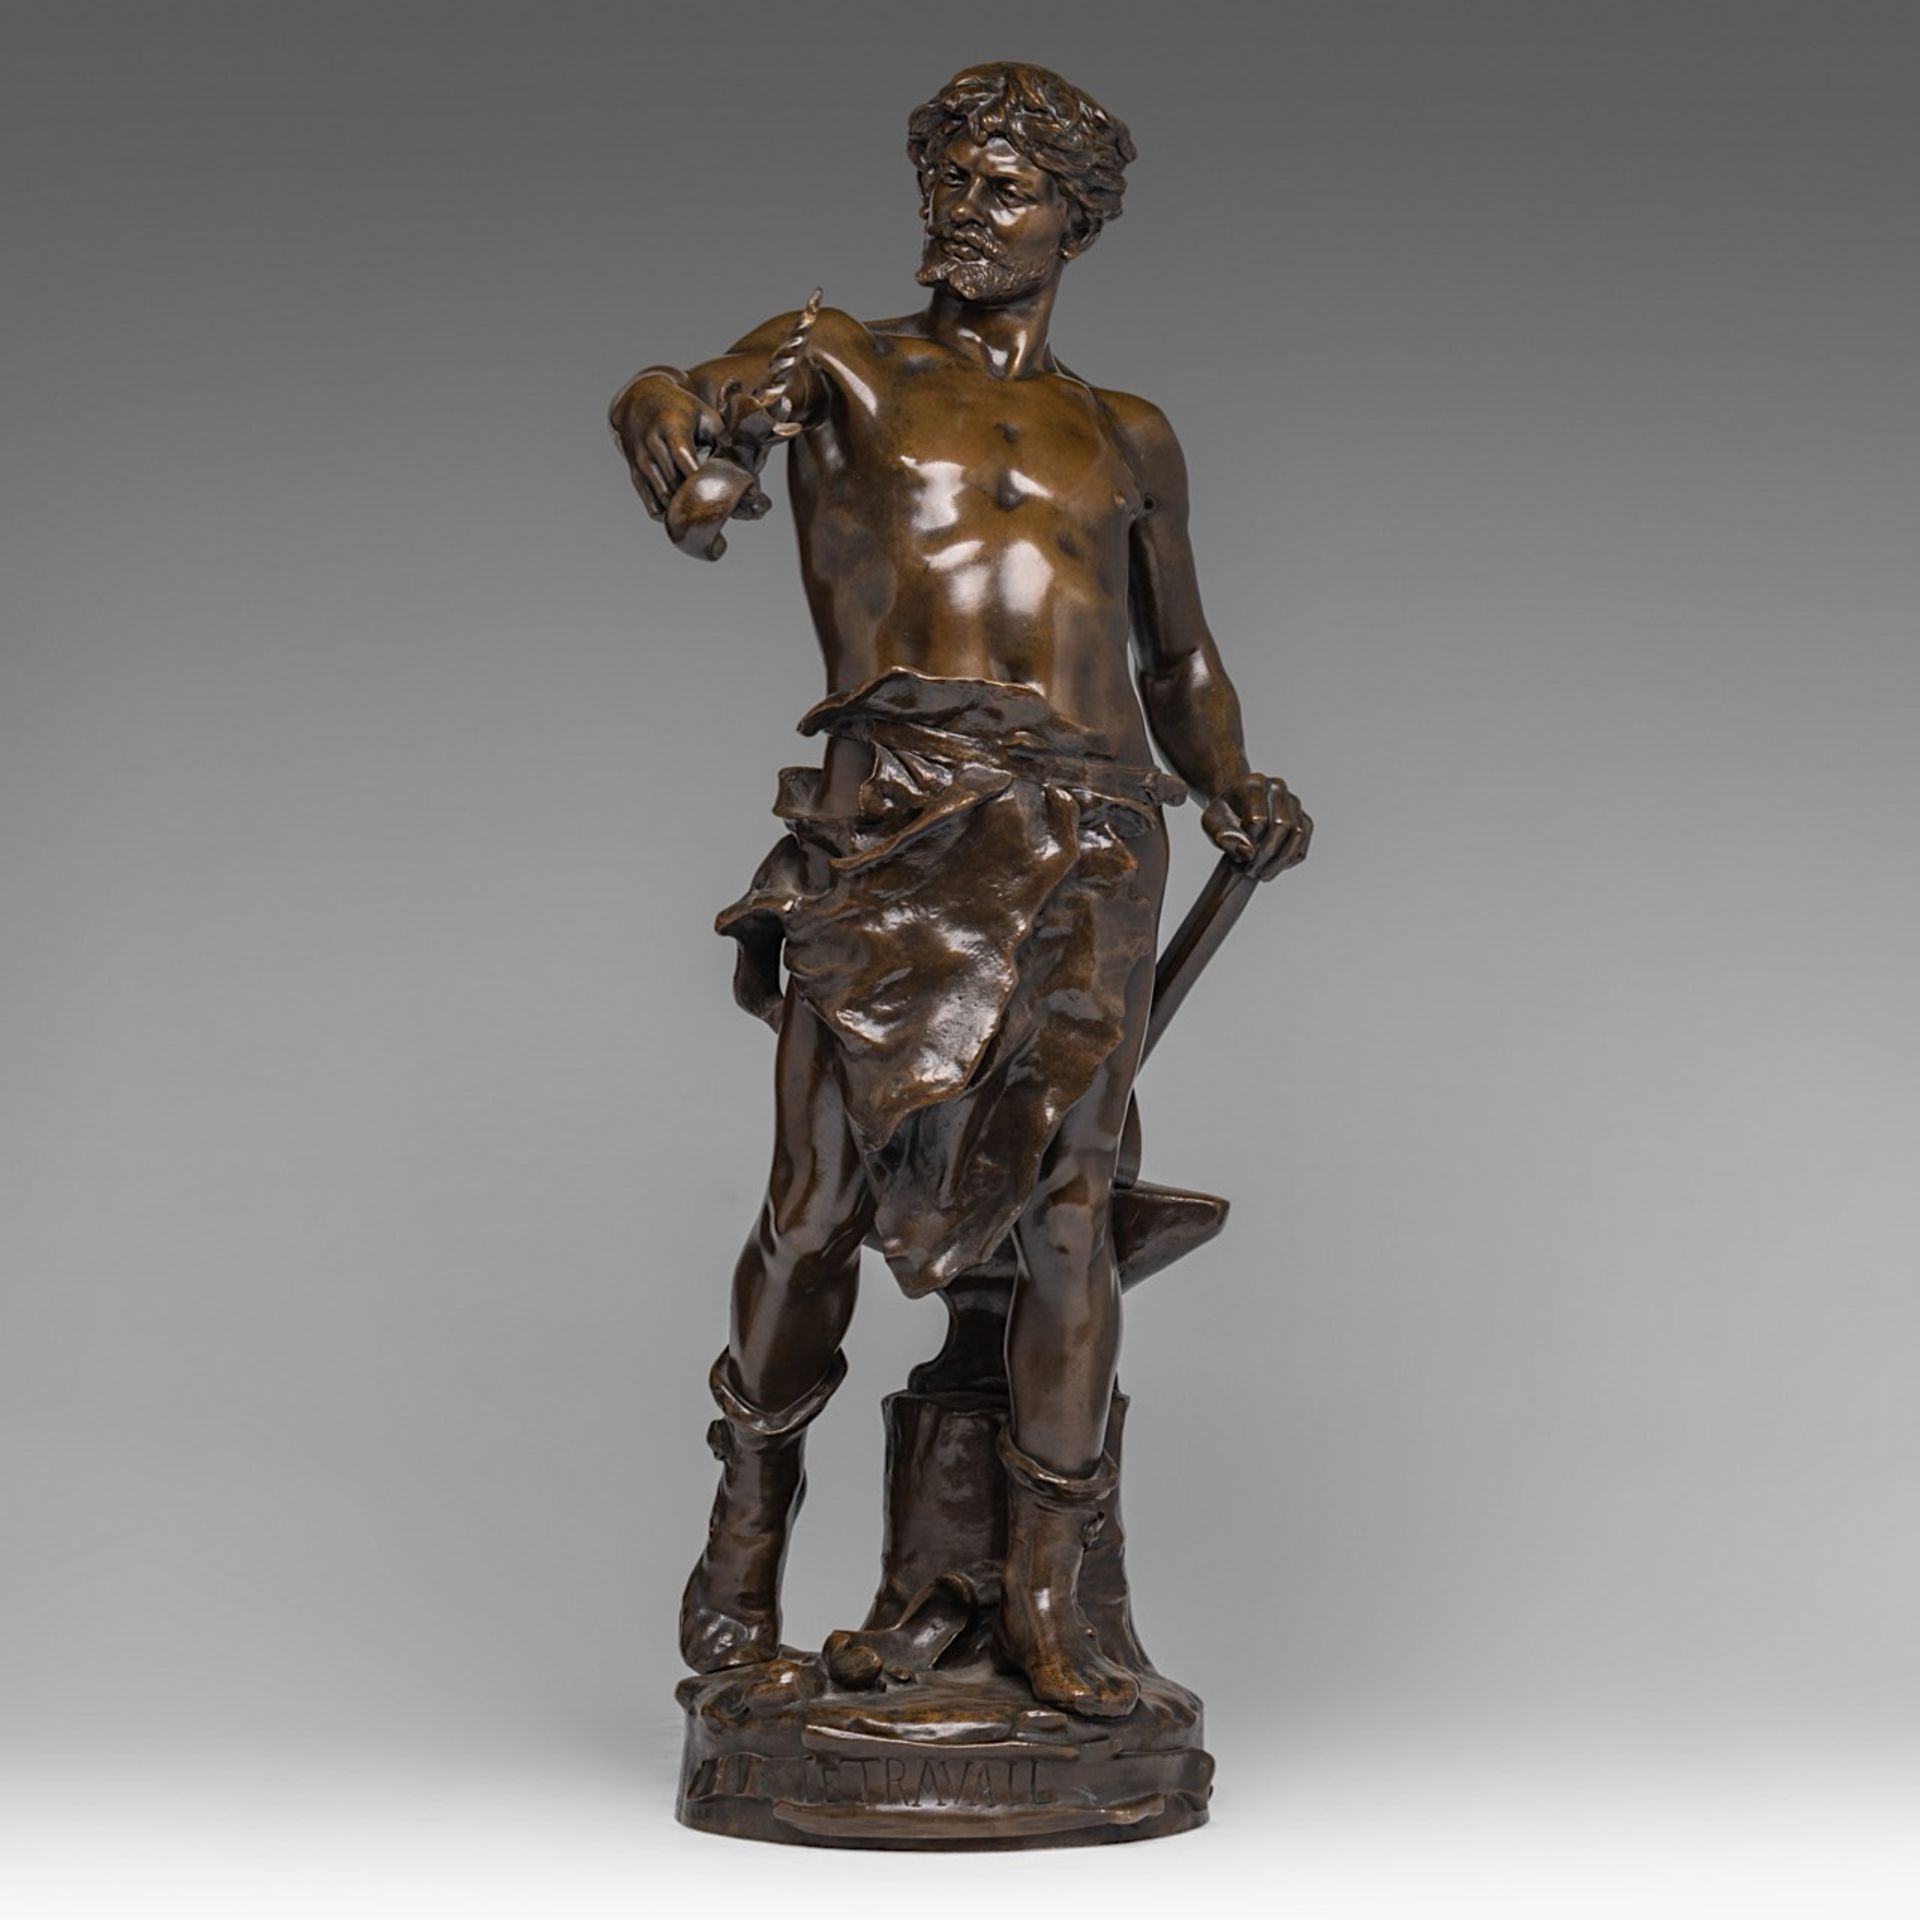 Claudius Mariton (1844-1919), 'Le Travail', patinated bronze, H 65 cm - Image 2 of 6